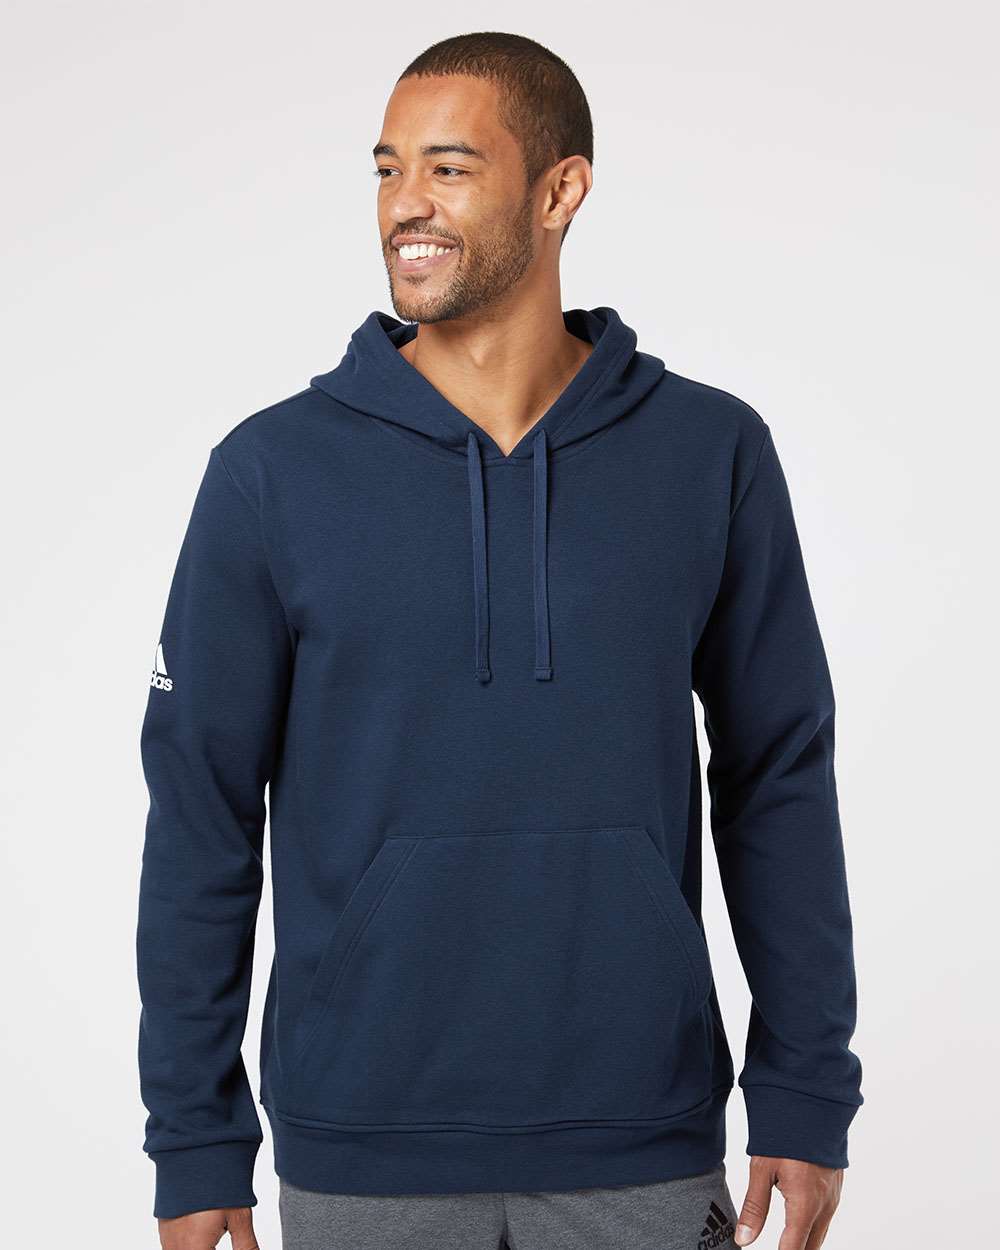 Adidas Fleece Hooded Sweatshirt #A432 Navy